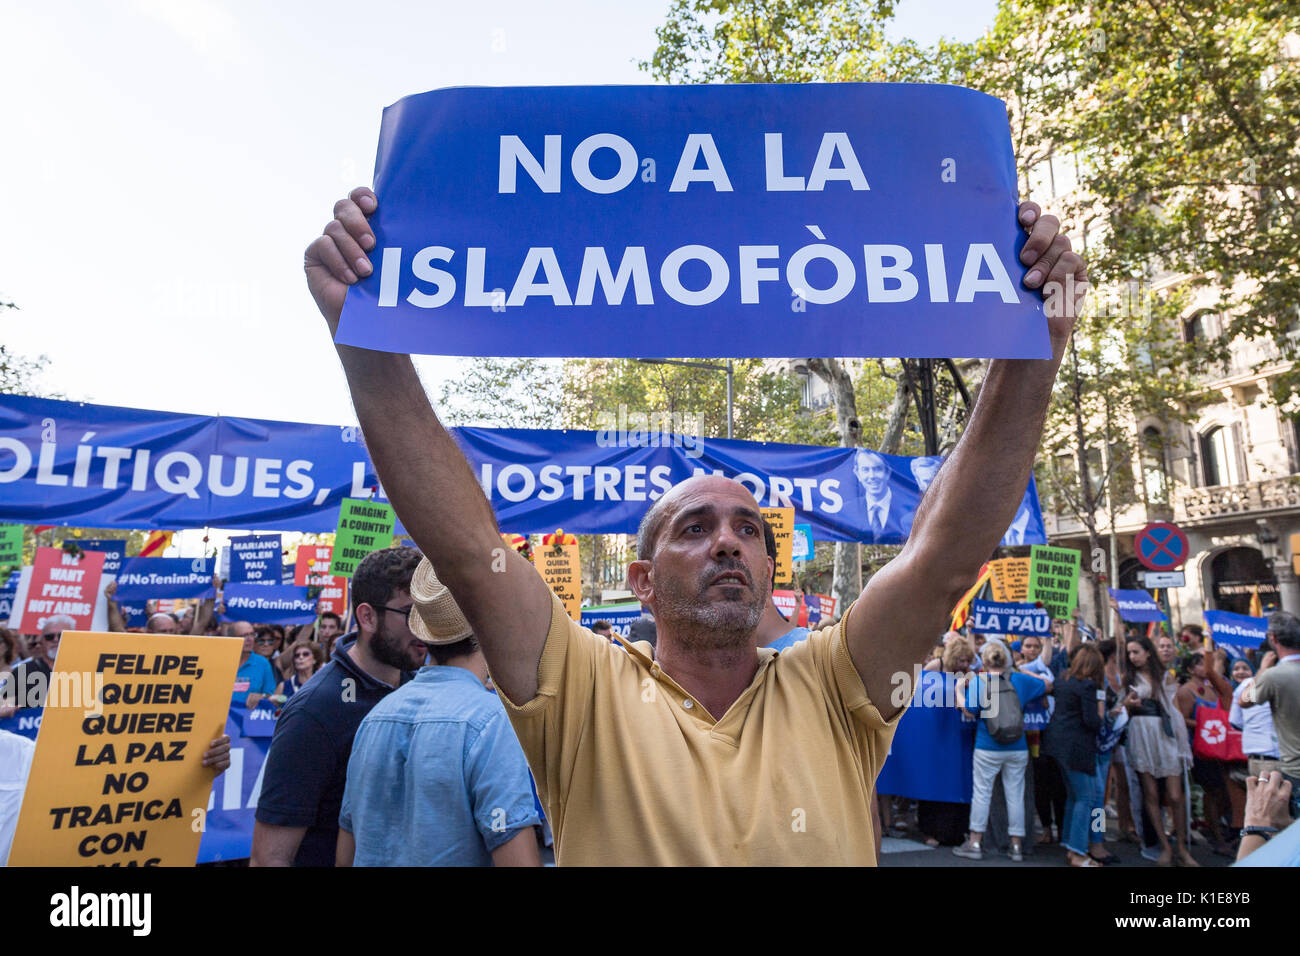 Barcelone, Espagne. Août 26, 2017. Un rassemblement se tiendra à Barcelone, une semaine après les attentats qui ont secoué la ville. L'événement d'aujourd'hui est de montrer notre solidarité avec les victimes de l'attaque. Crédit : Fabrizio Cortesi/Alamy Live News Banque D'Images